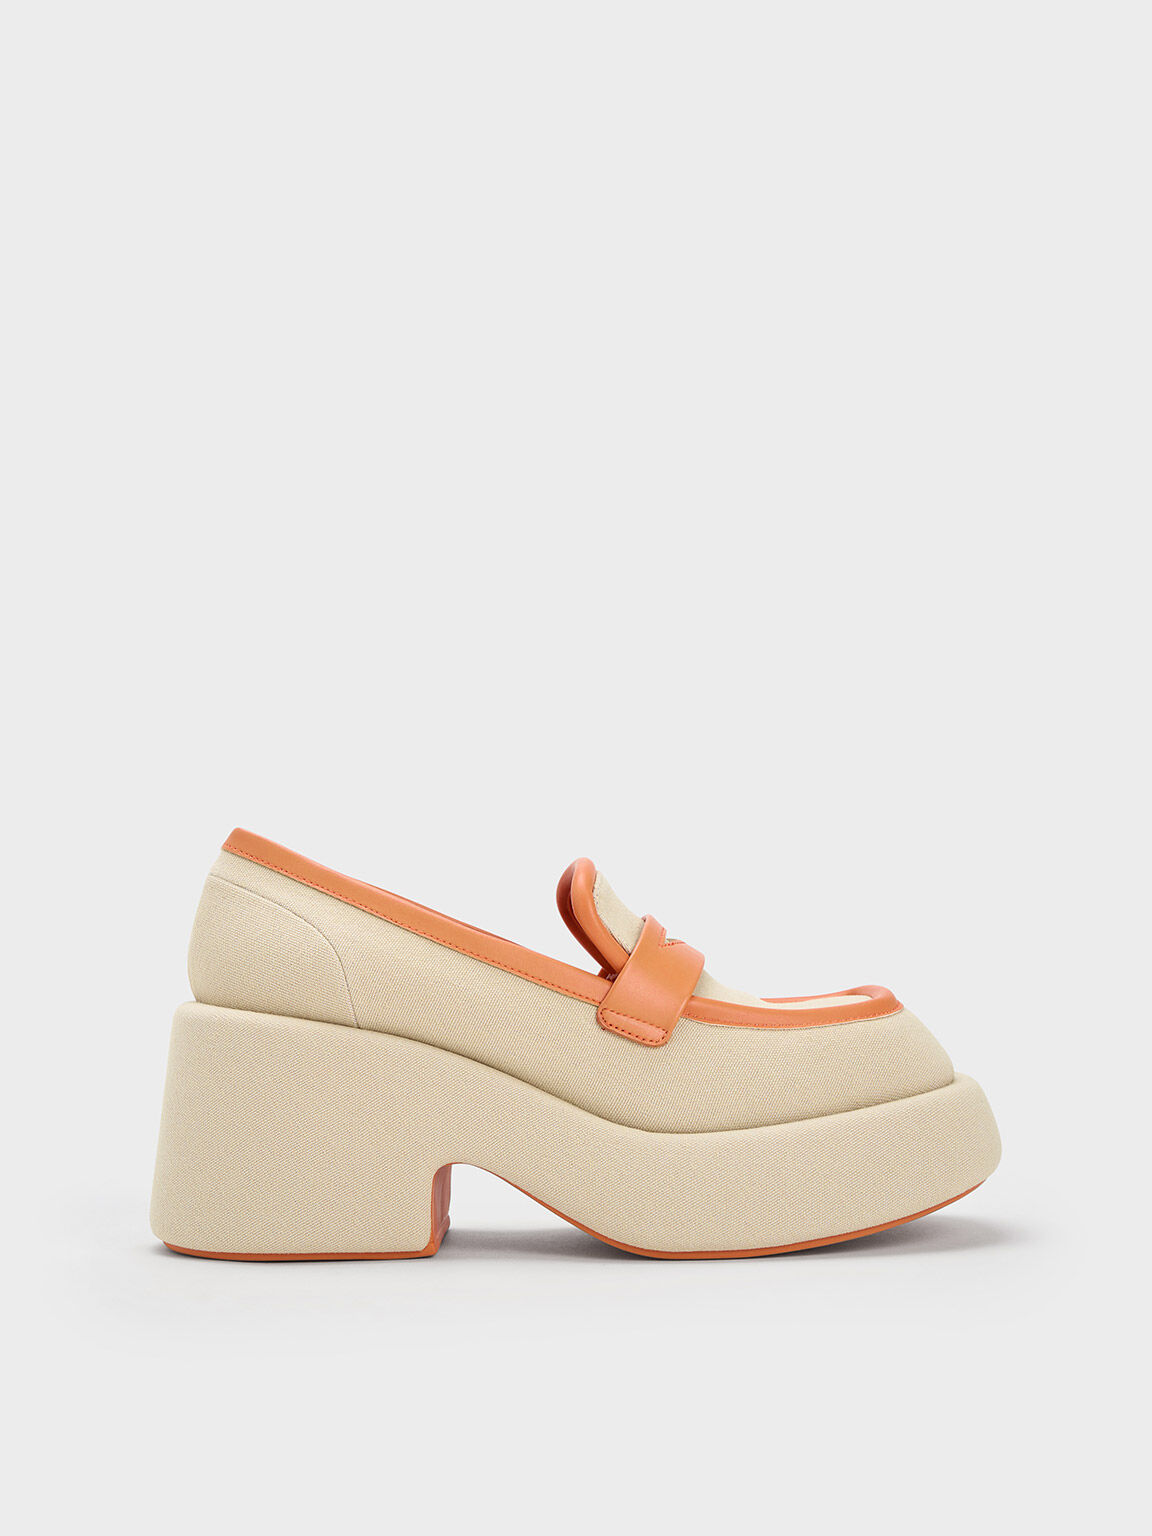 Leni Canvas Platform Loafers, Orange, hi-res